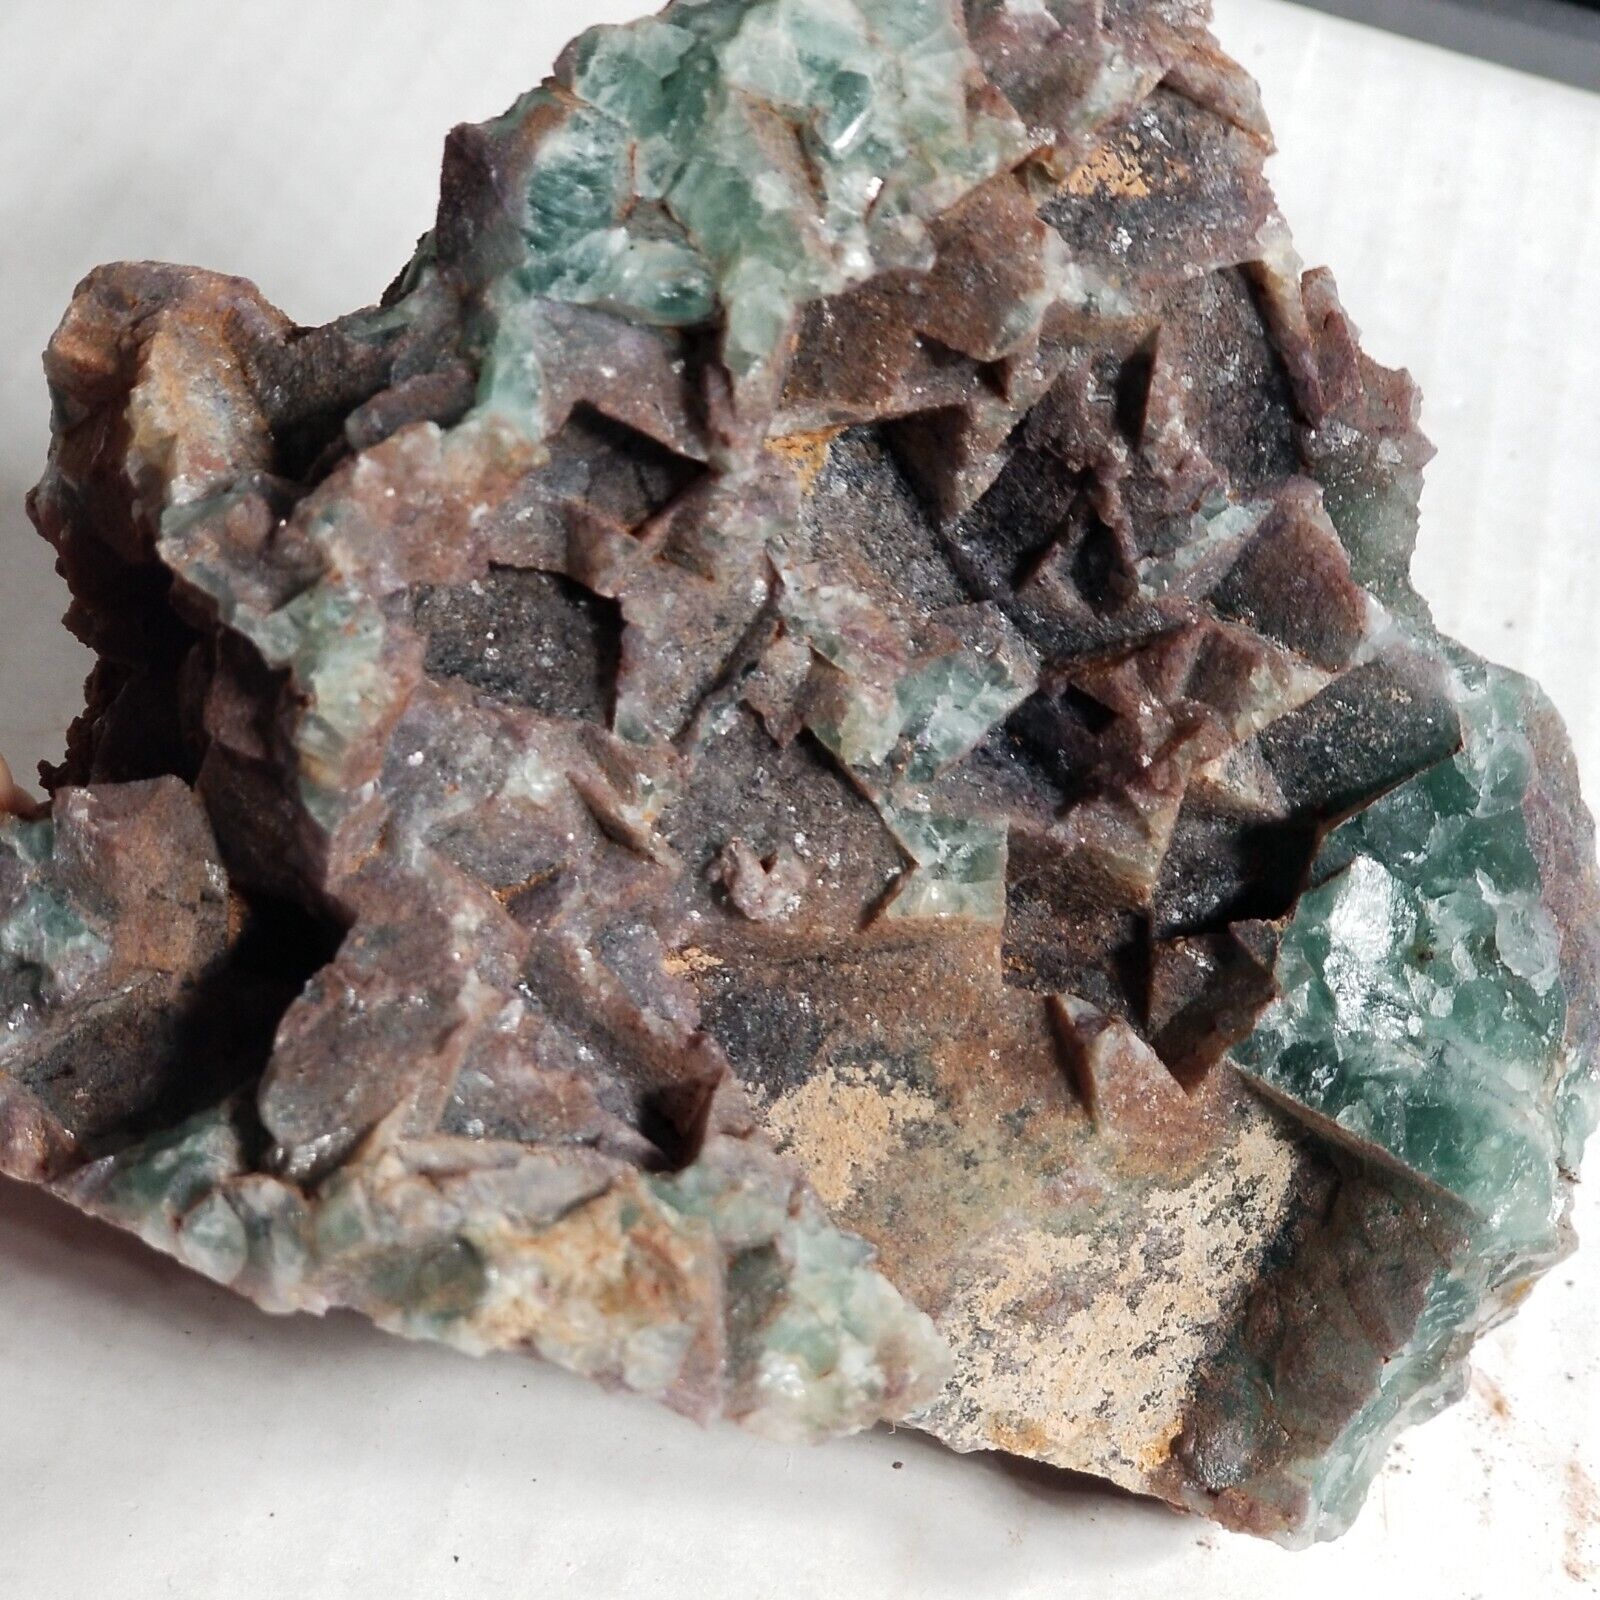 Fluorite, BonneKay Mine, Grants, New Mexico